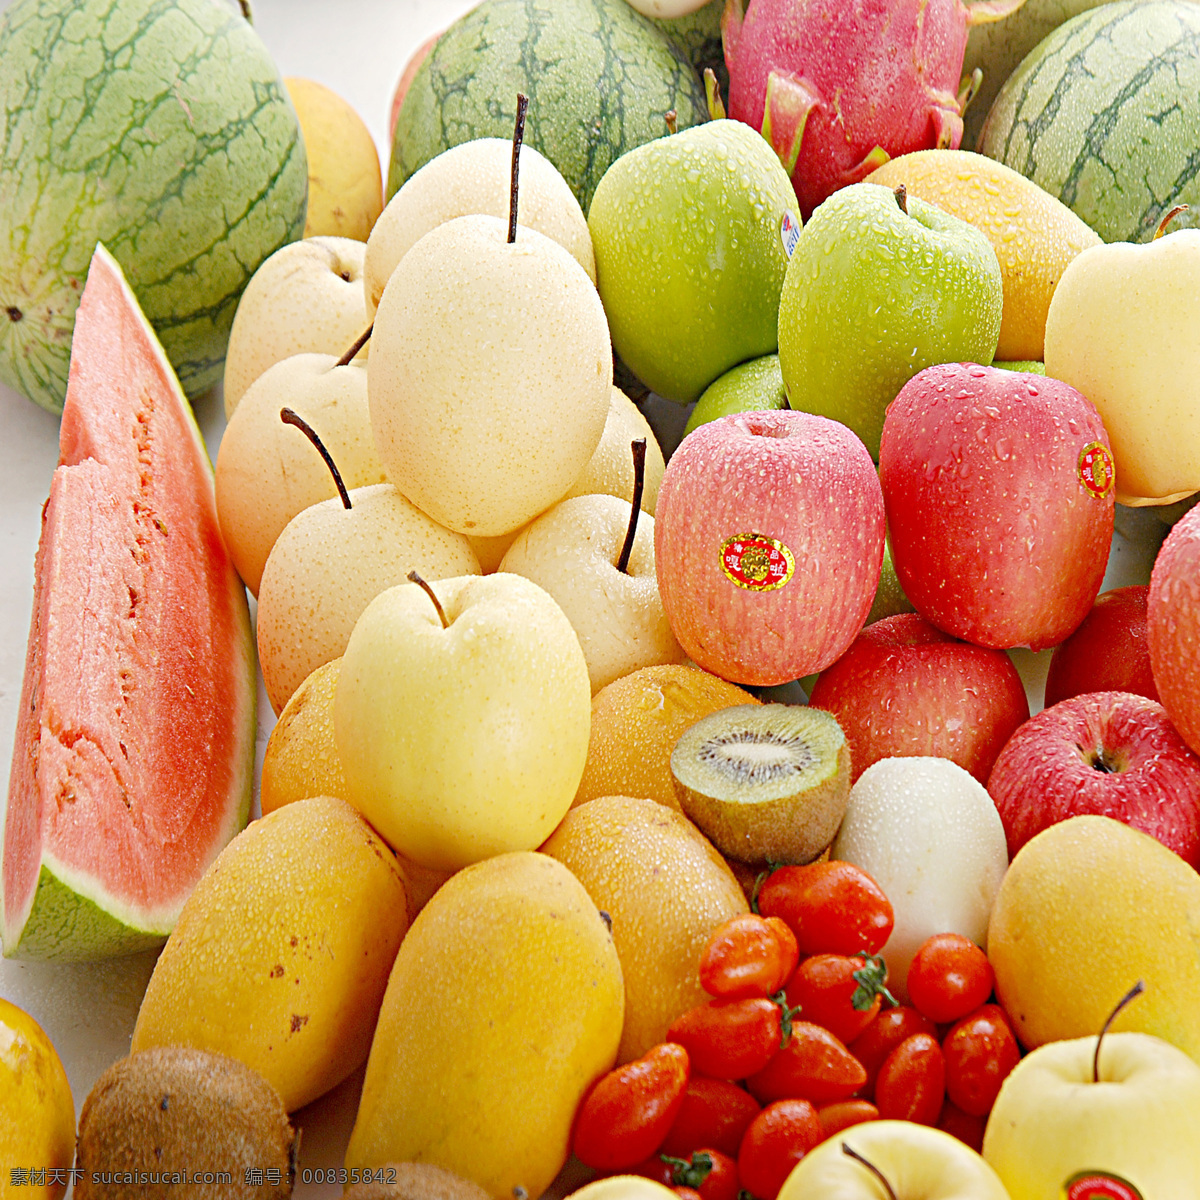 水果图片 水果 水果集锦 各种水果 水果拼盘 热带水果 维生素 丰富的水果 水果堆 苹果 梨子 西瓜 火龙果 芒果 生物世界